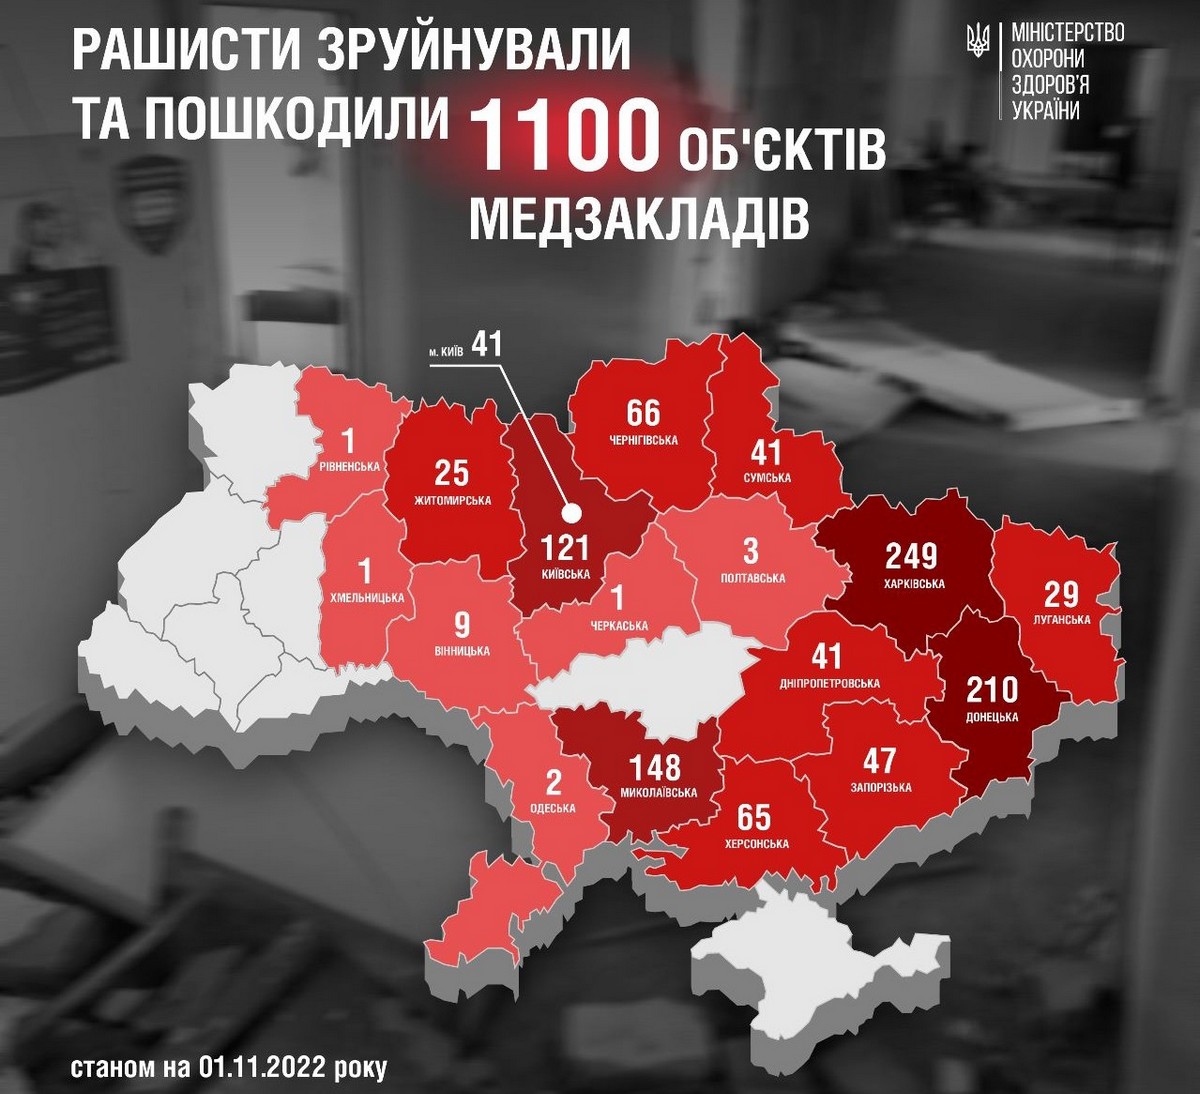 МОЗ України: за 8 місяців війни рашисти пошкодили 1100 об’єктів у різних медзакладах